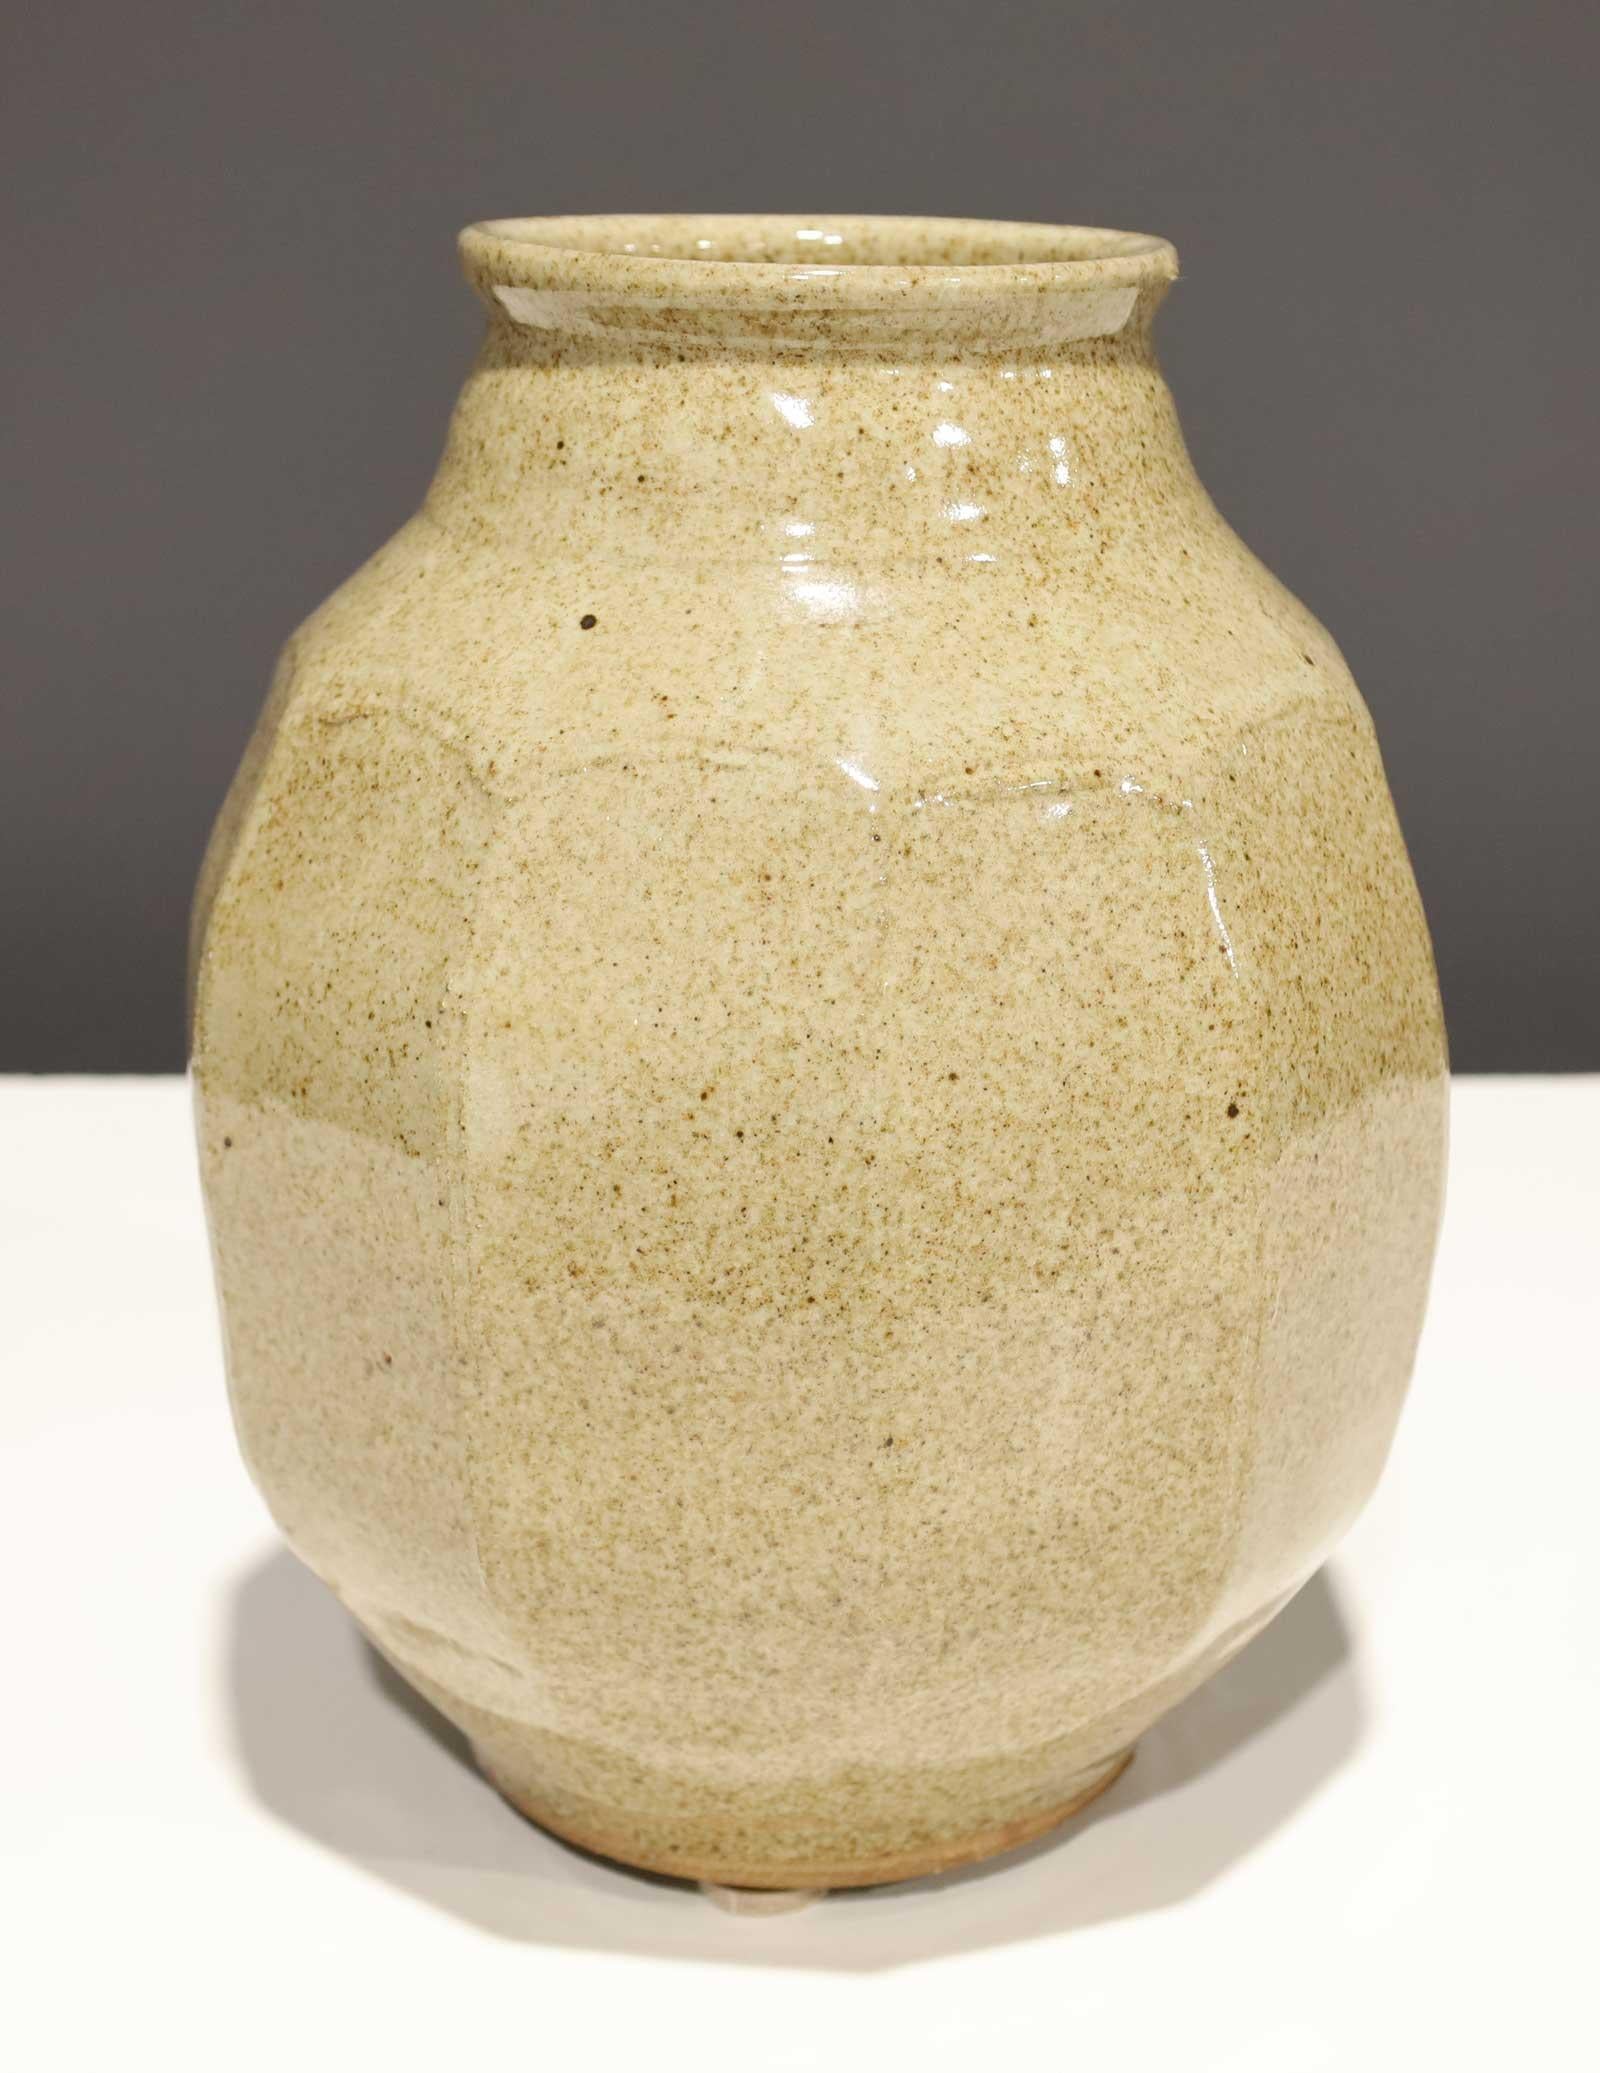 Warren MacKenzie è noto per le sue ceramiche funzionali semplici, realizzate al tornio, influenzate da Bernard Leach e dall'estetica giapponese delle opere di Shoji Hamada.

Nel 1950 MacKenzie e la sua prima moglie Alix divennero i primi